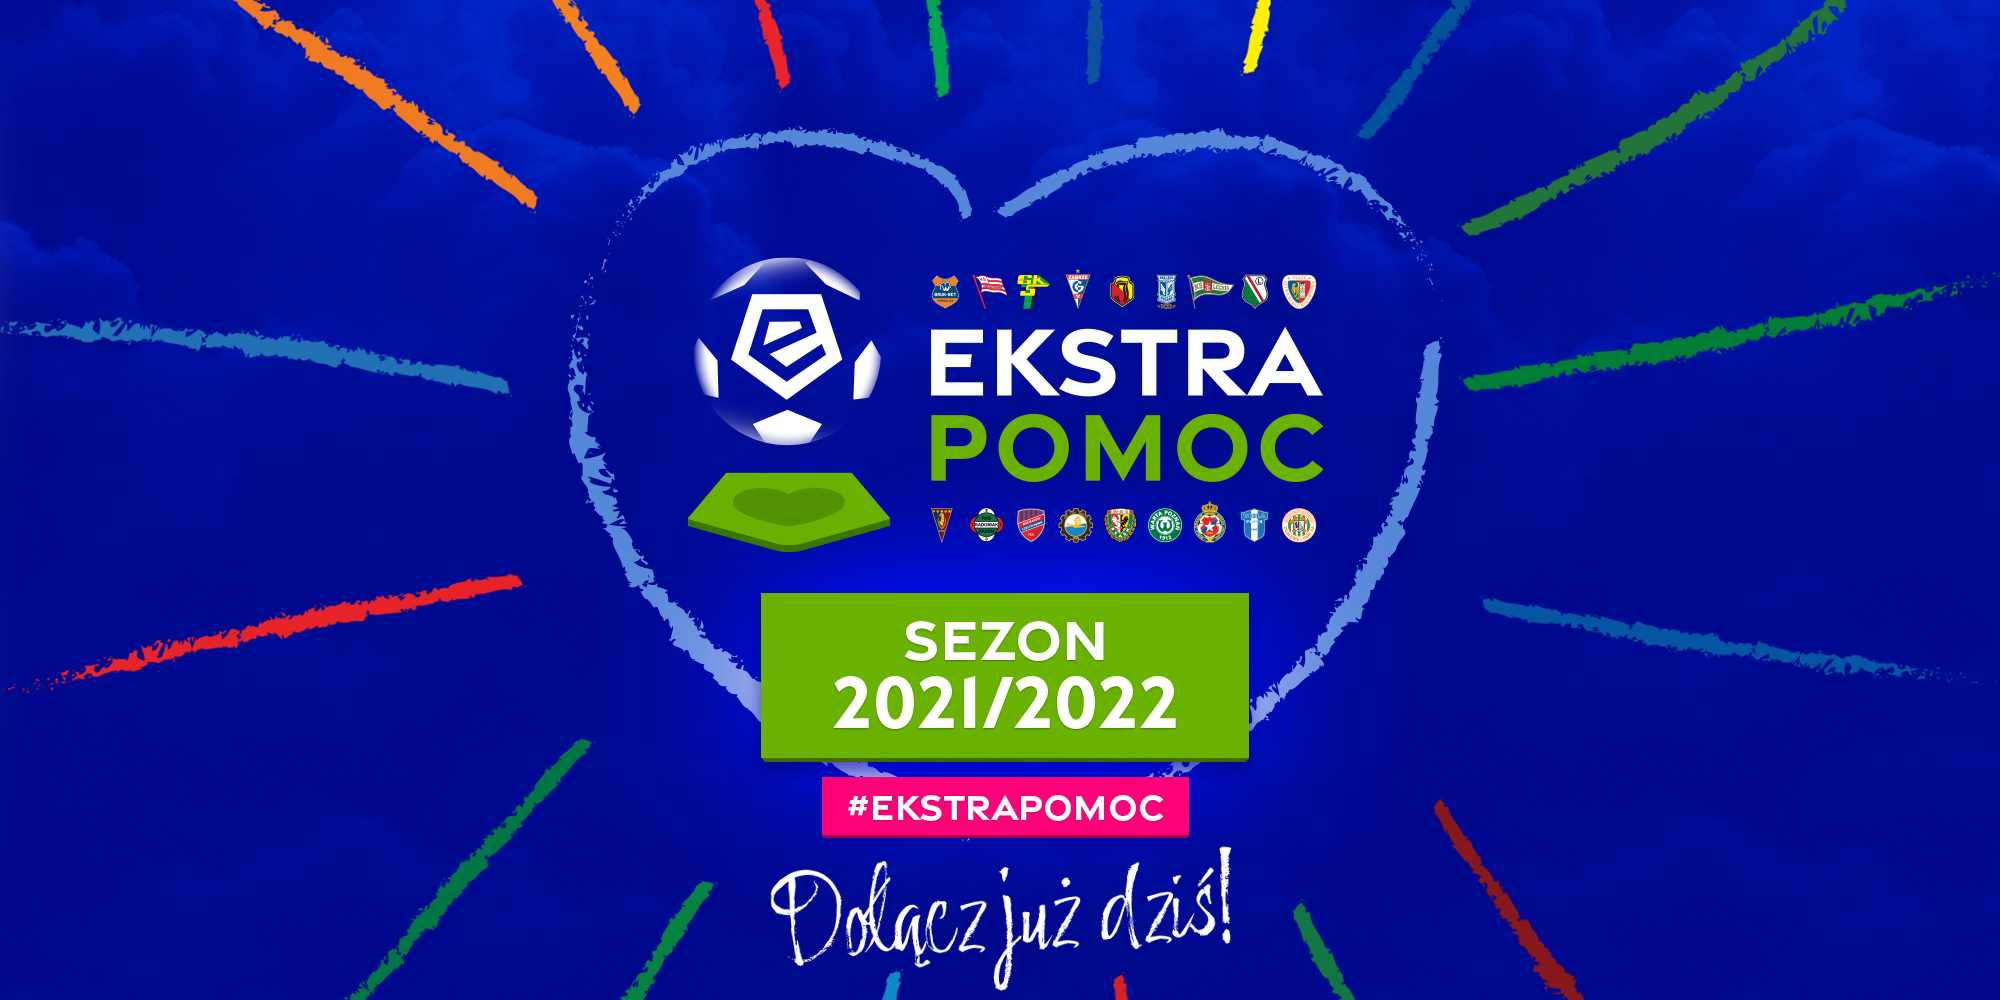  #EkstraPomoc - kluby Ekstraklasy wspierają Franka Przybyłę